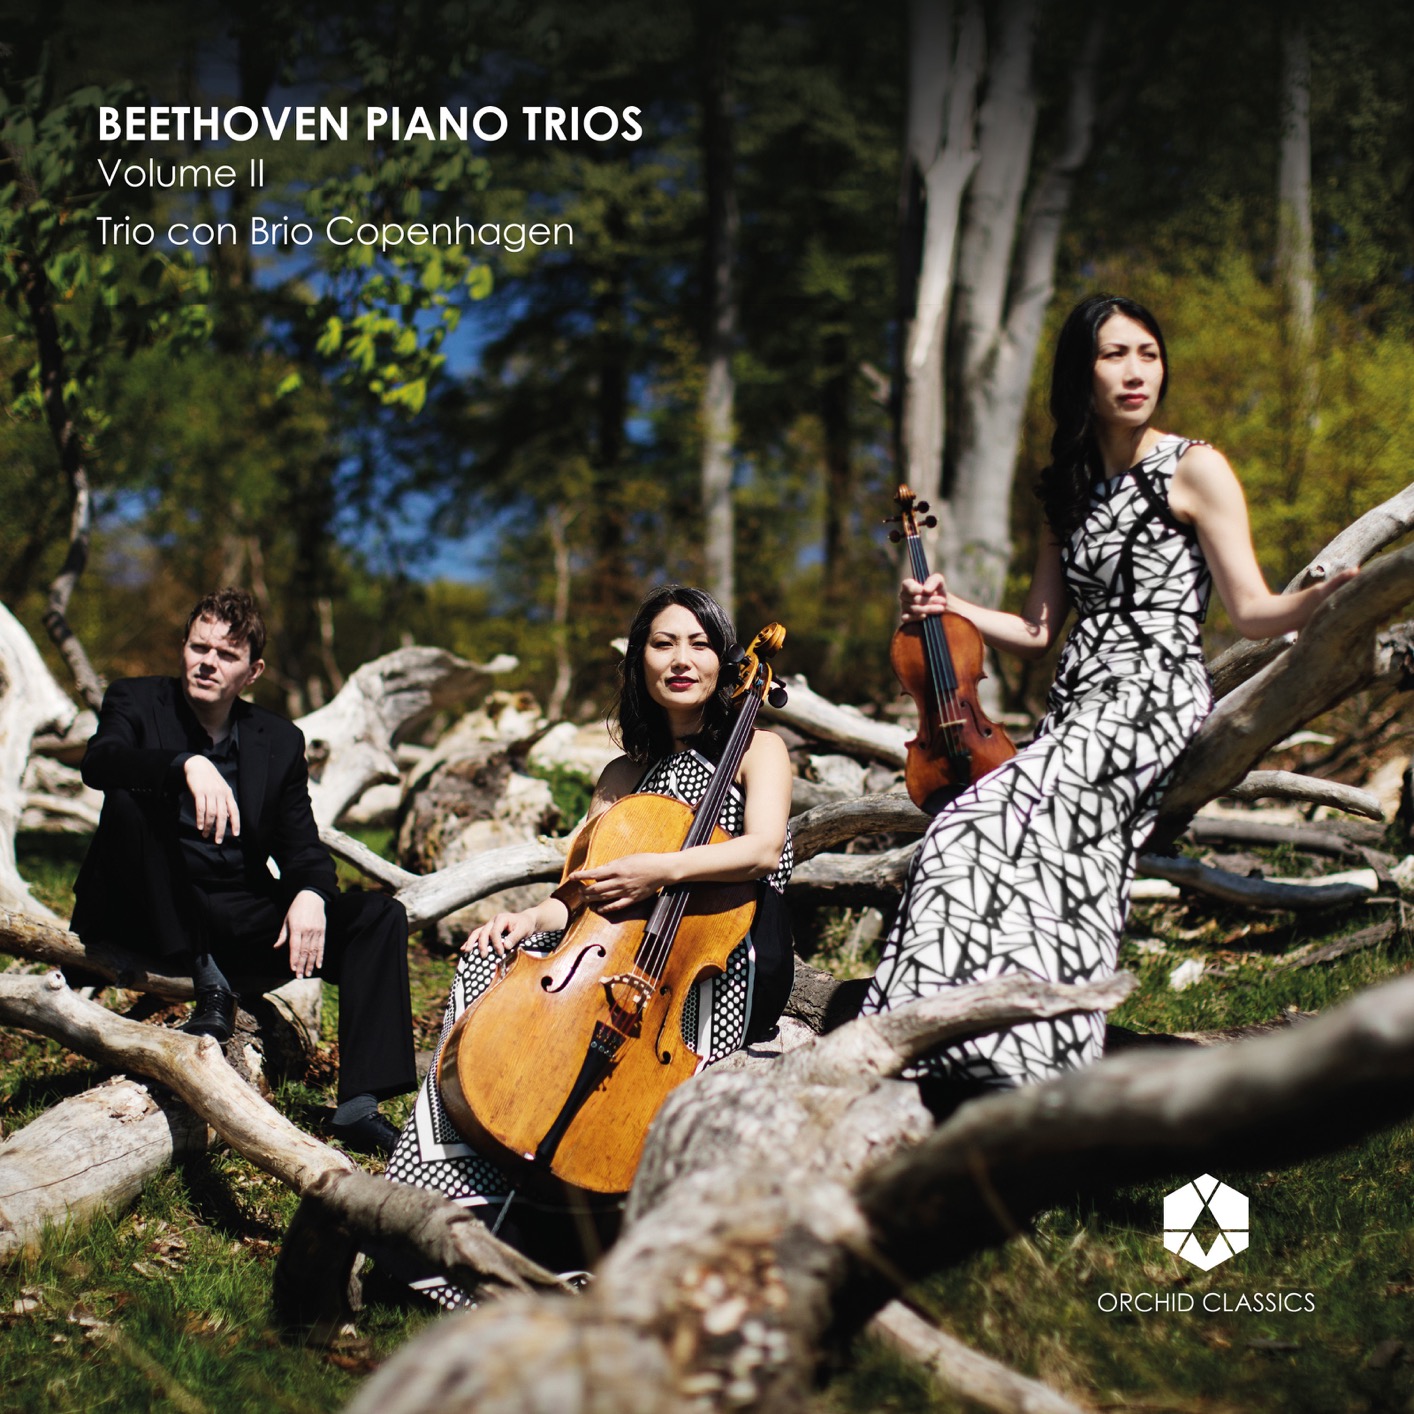 Trio Con Brio Copenhagen - Beethoven Piano Trios, Vol. 2 (2018) [FLAC 24bit/96kHz]